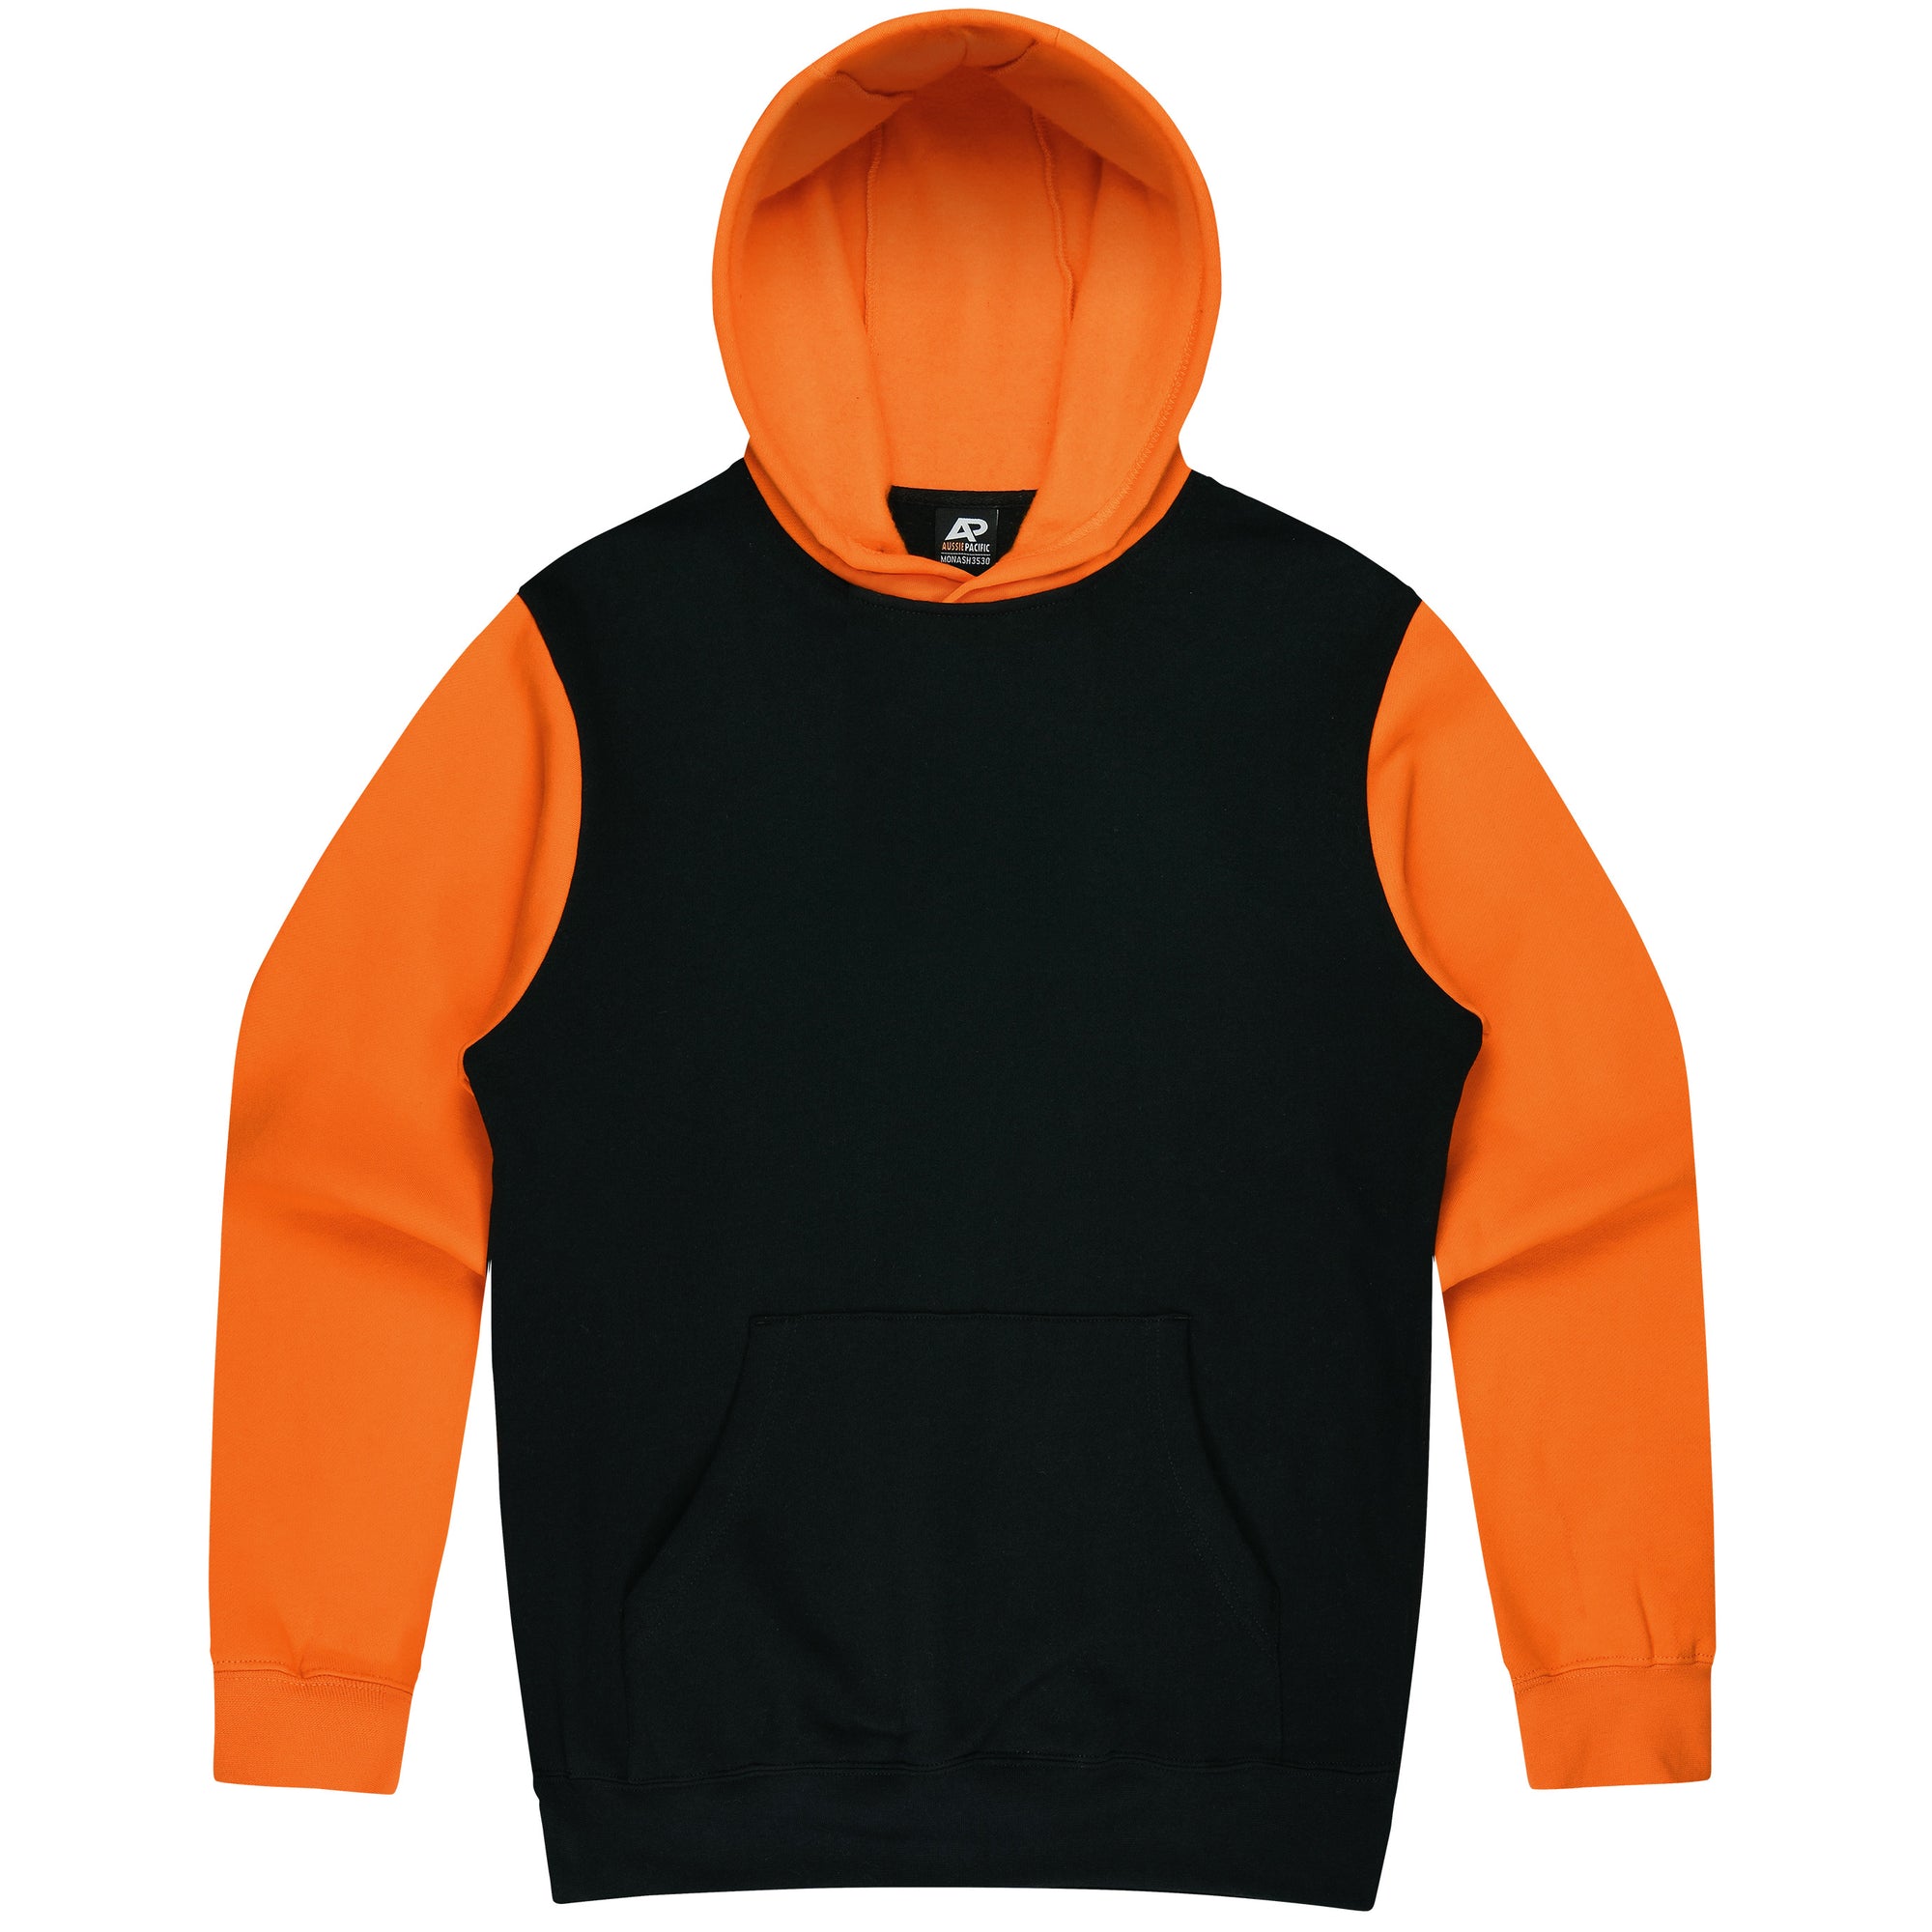 Custom Printed Monash Hoodies - Black/Electric Orange